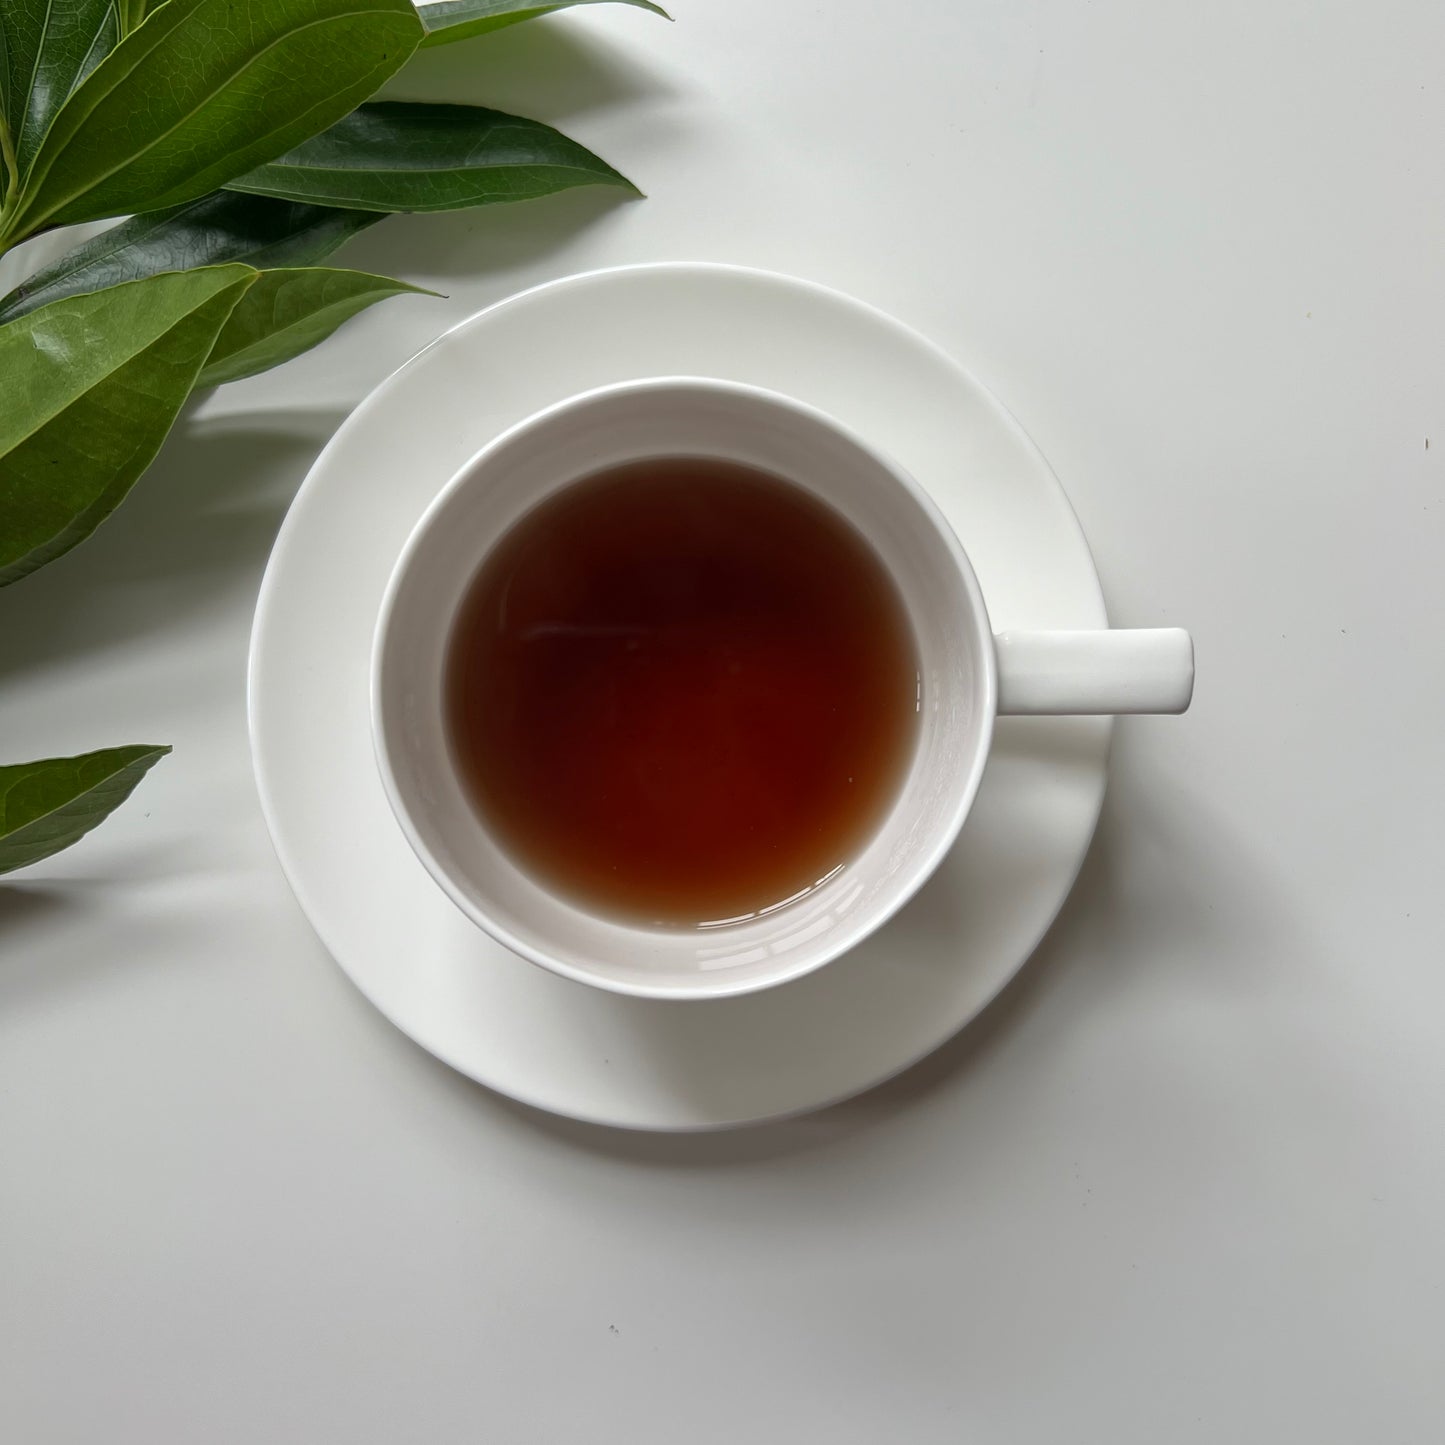 Energee Tea (32 Servings) Loose Organic Herbal Tea Revitalize